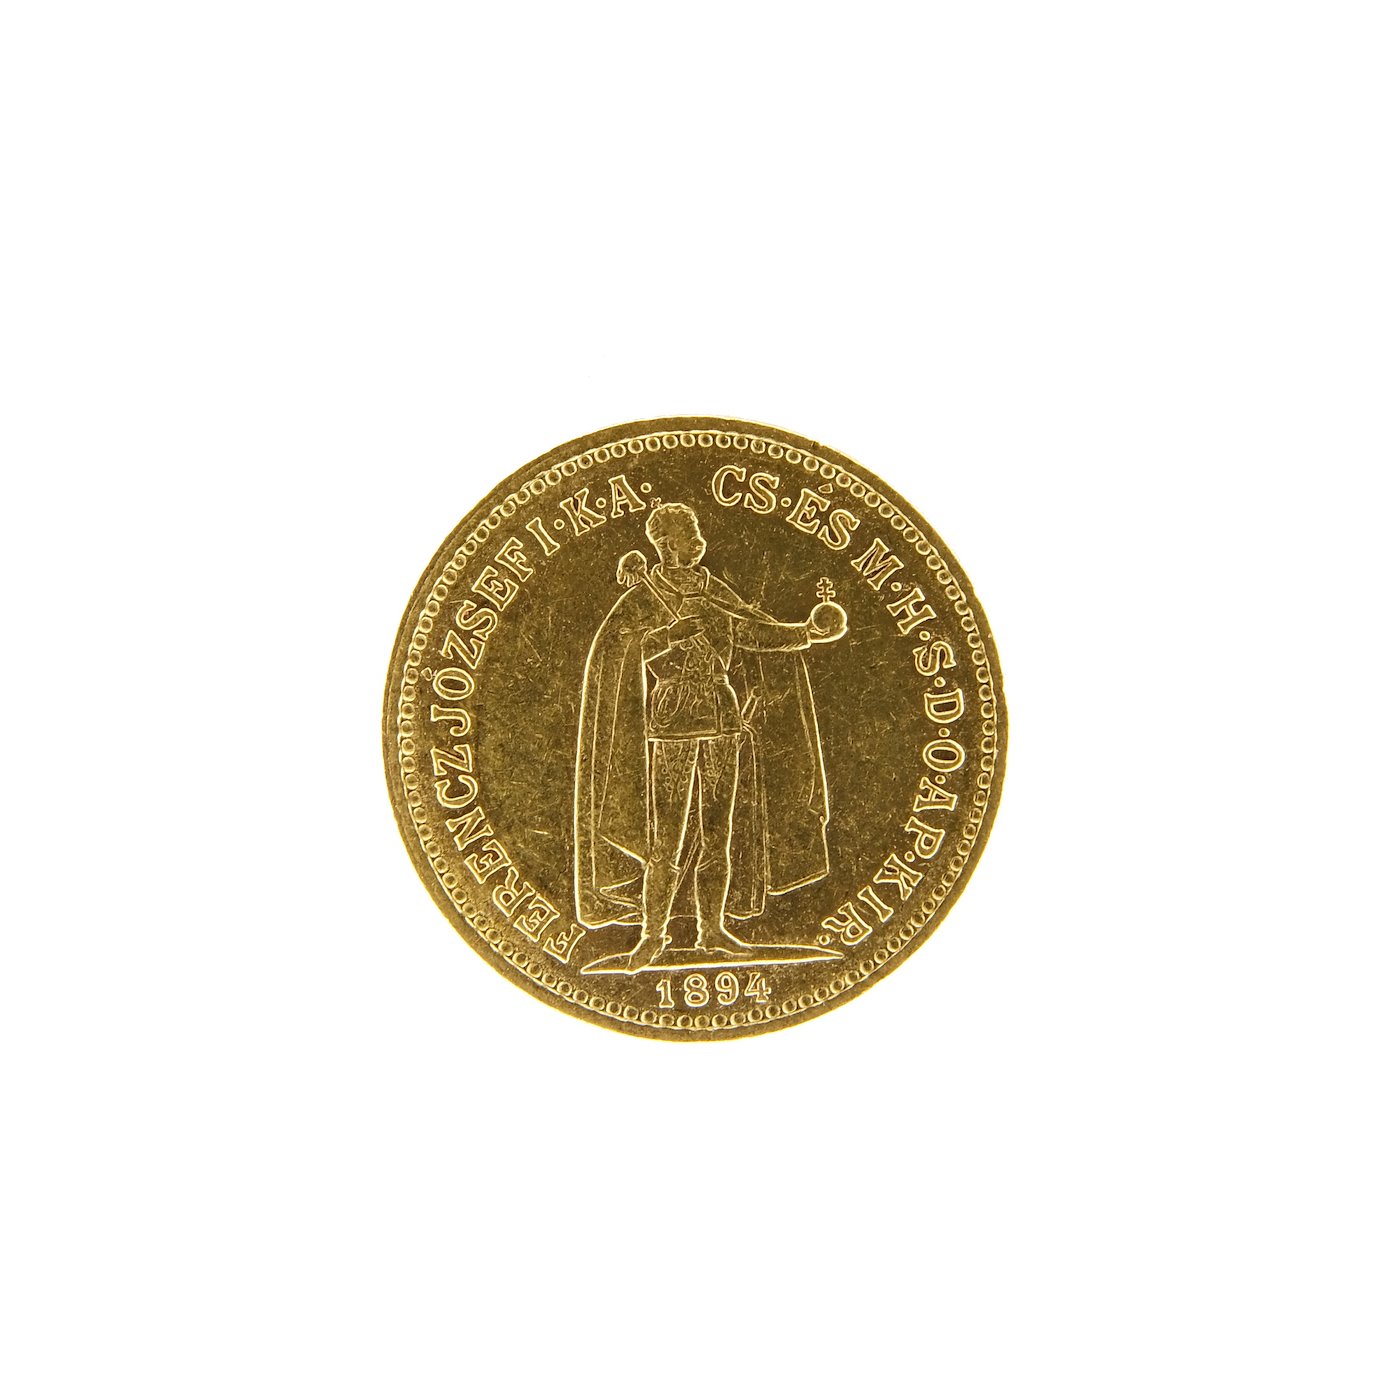 Mince - Rakousko Uhersko zlatá 10 Koruna 1894 K.B. uherská. Zlato 900/1000, hrubá hmotnost mince 3,387g